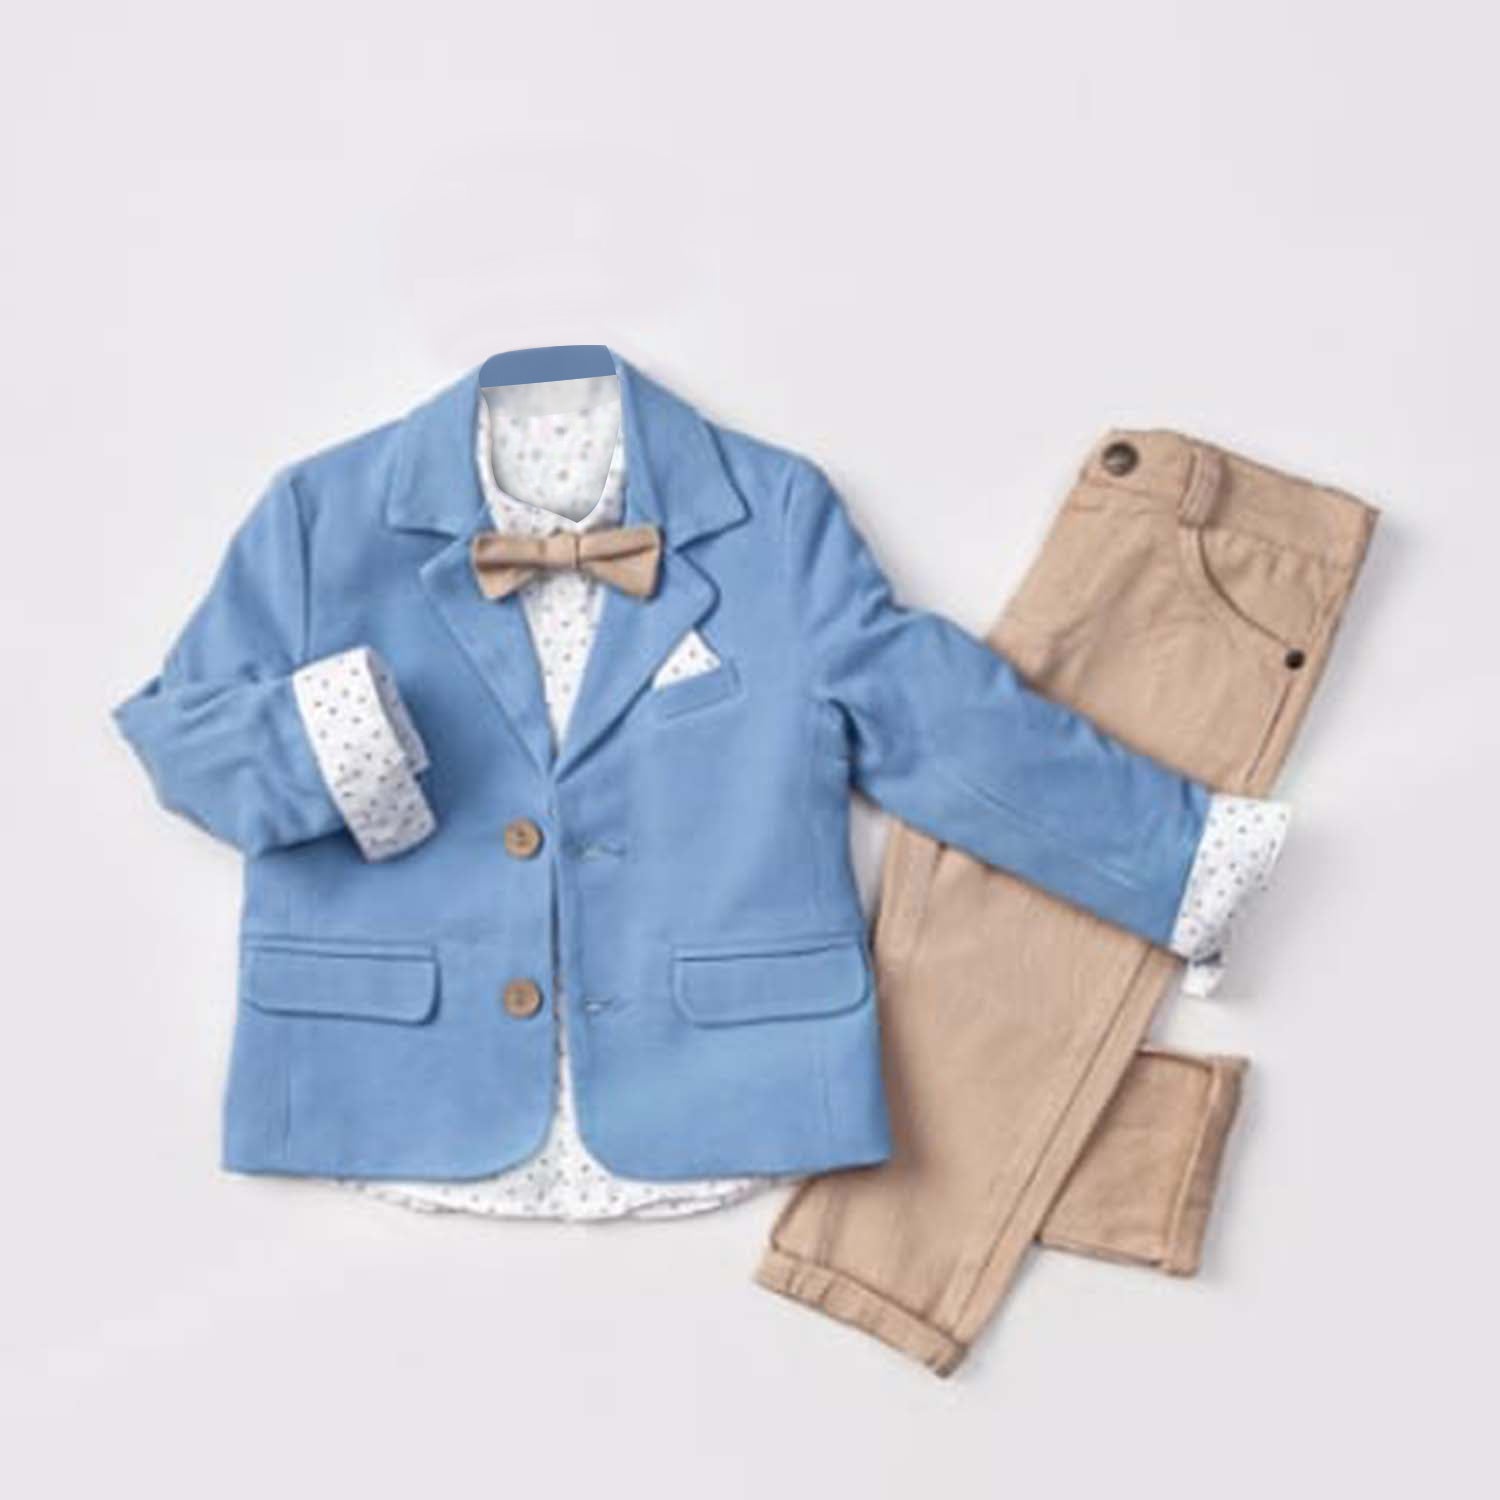 Little Boy's Colorful Suit Jacket, Pants and Button-Up Shirt 3-Piece Set - 0